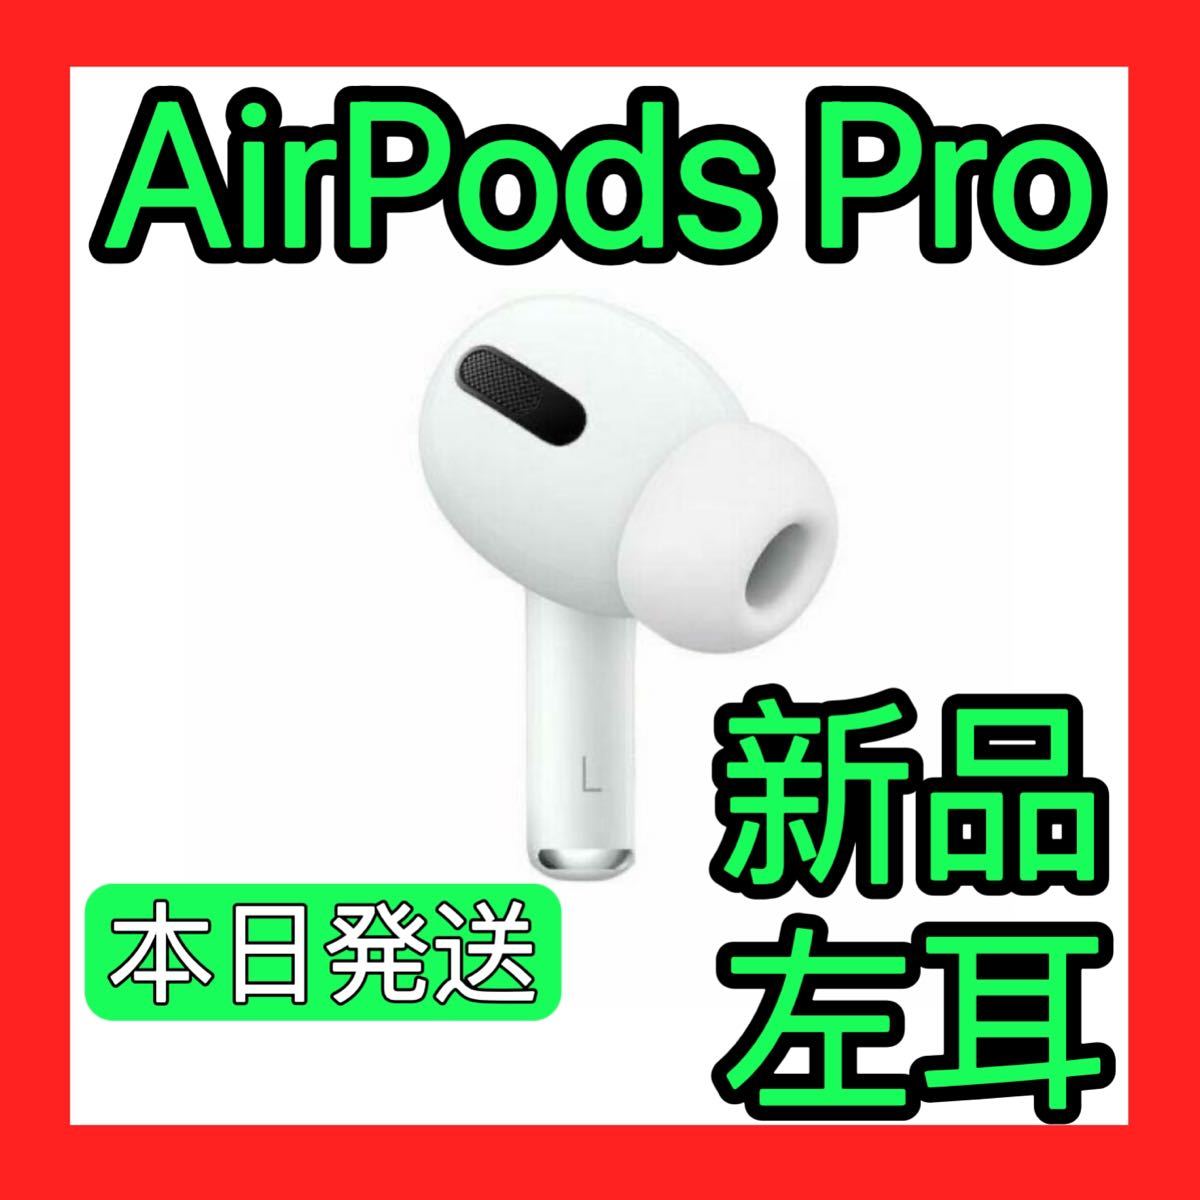 驚きの値段で Apple AirPods pro 新品 左耳 エアーポッズ 純正品